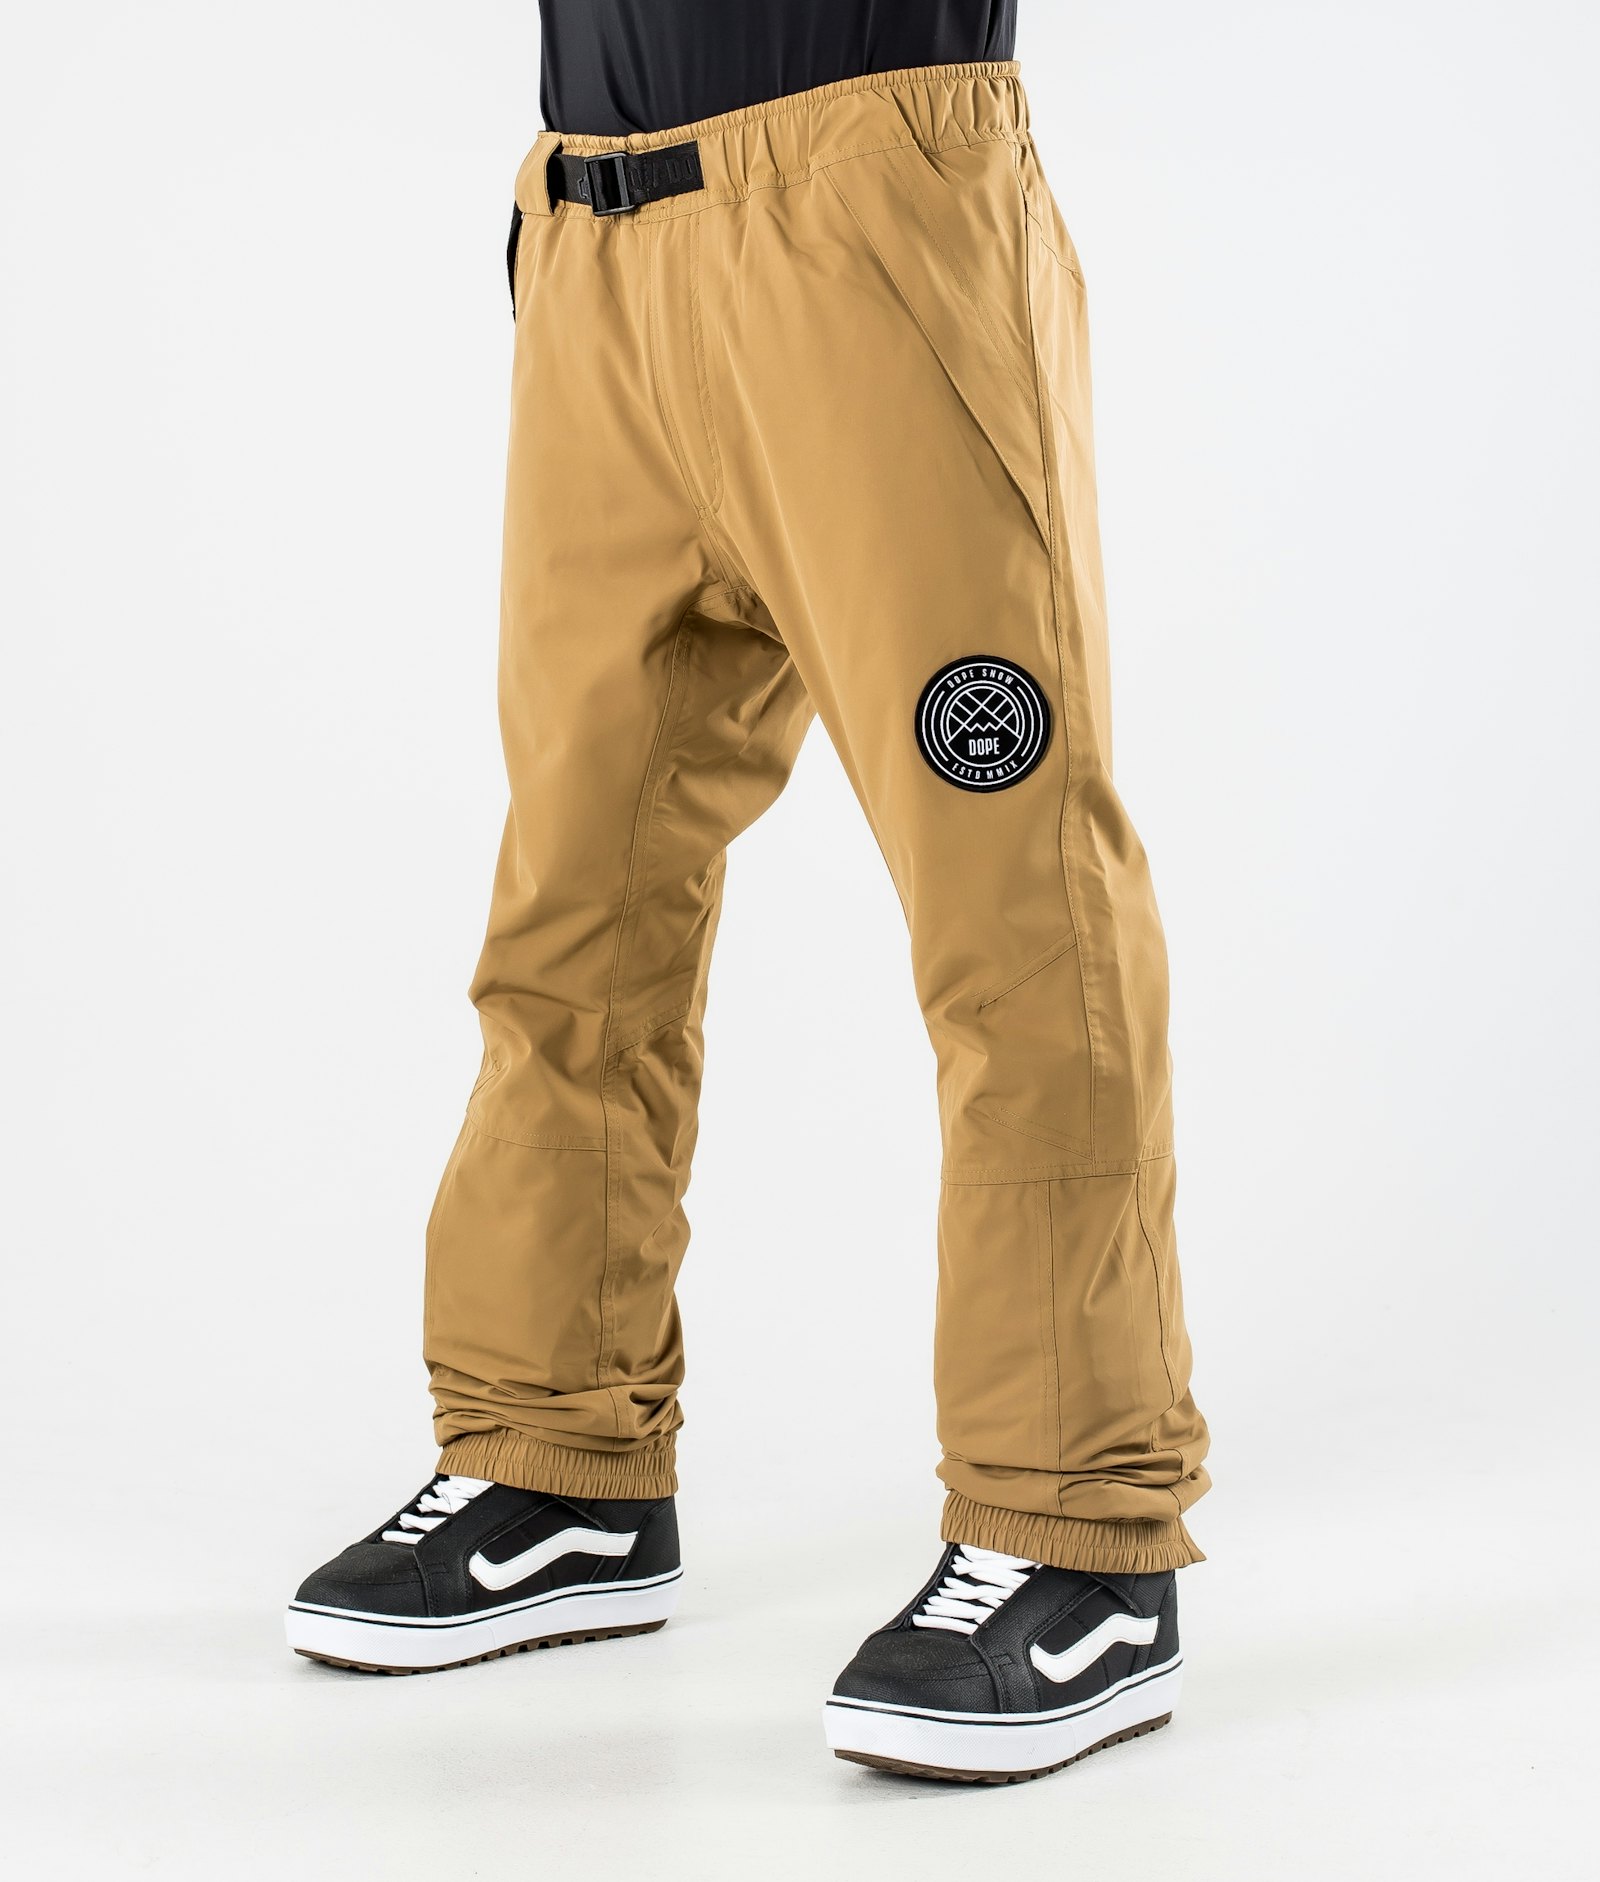 Blizzard 2020 Pantalon de Snowboard Homme Gold